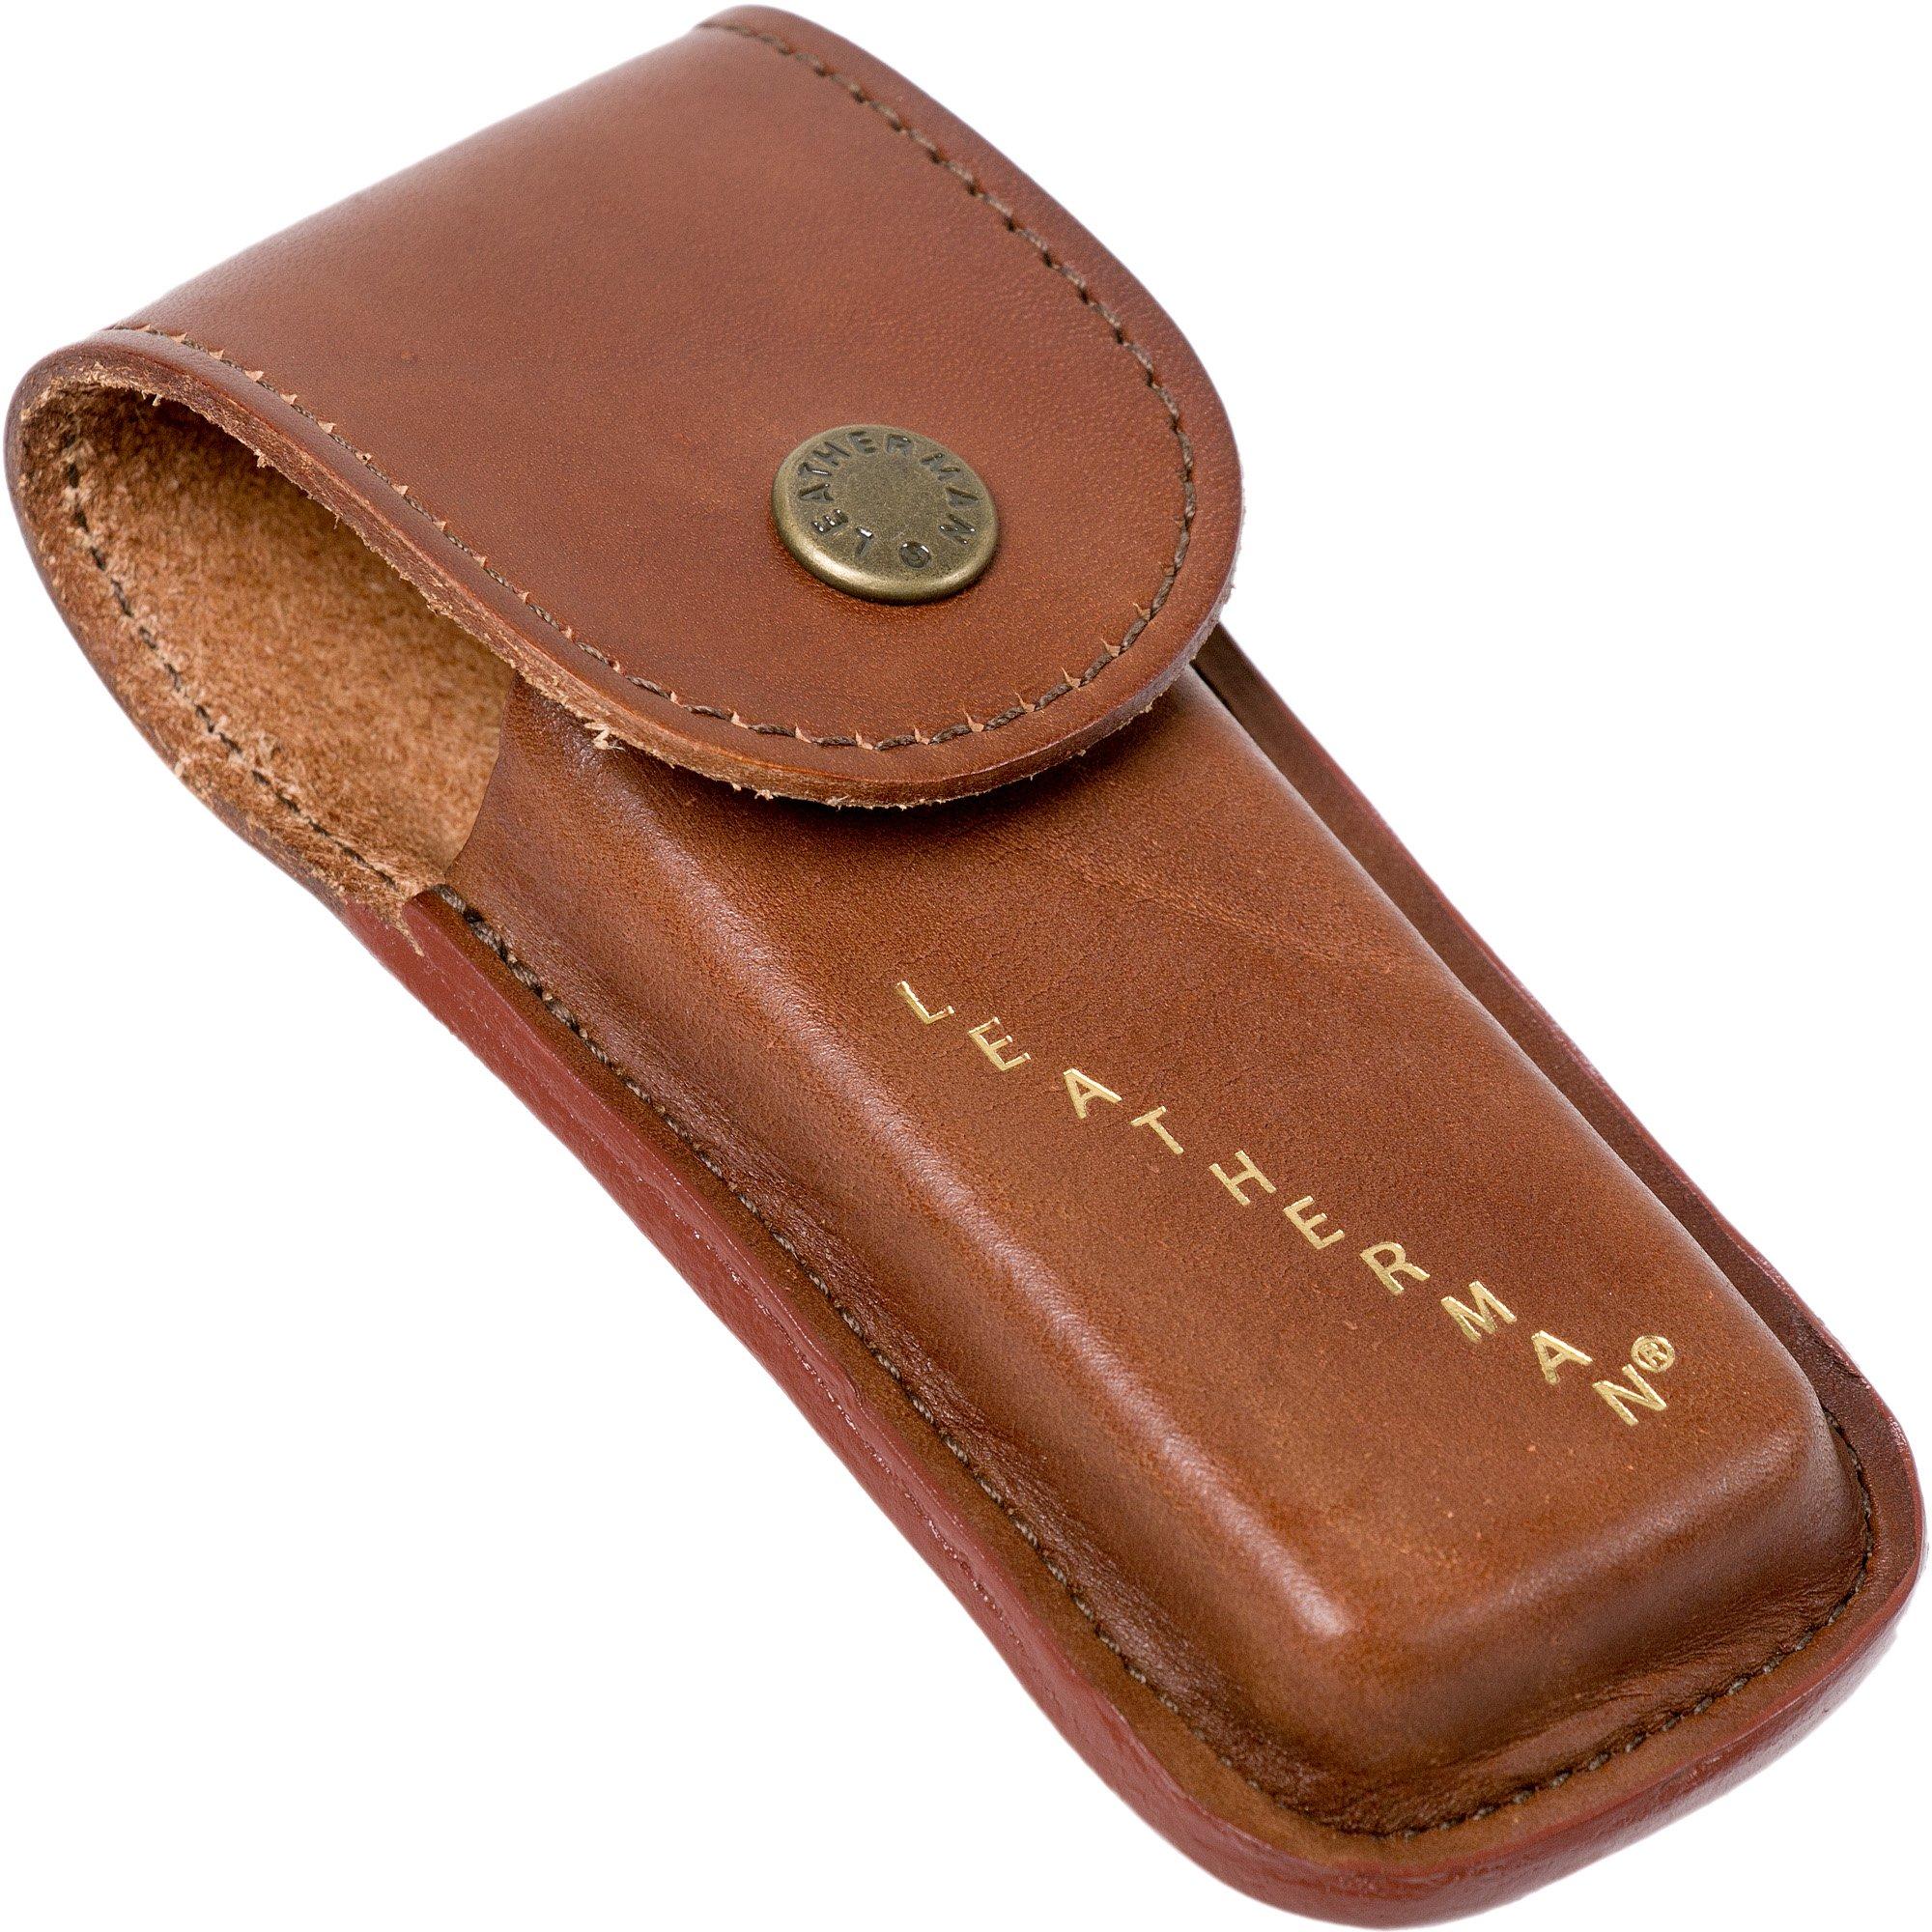 Leatherman Heritage Sheath Medium, leather belt sheath 832594